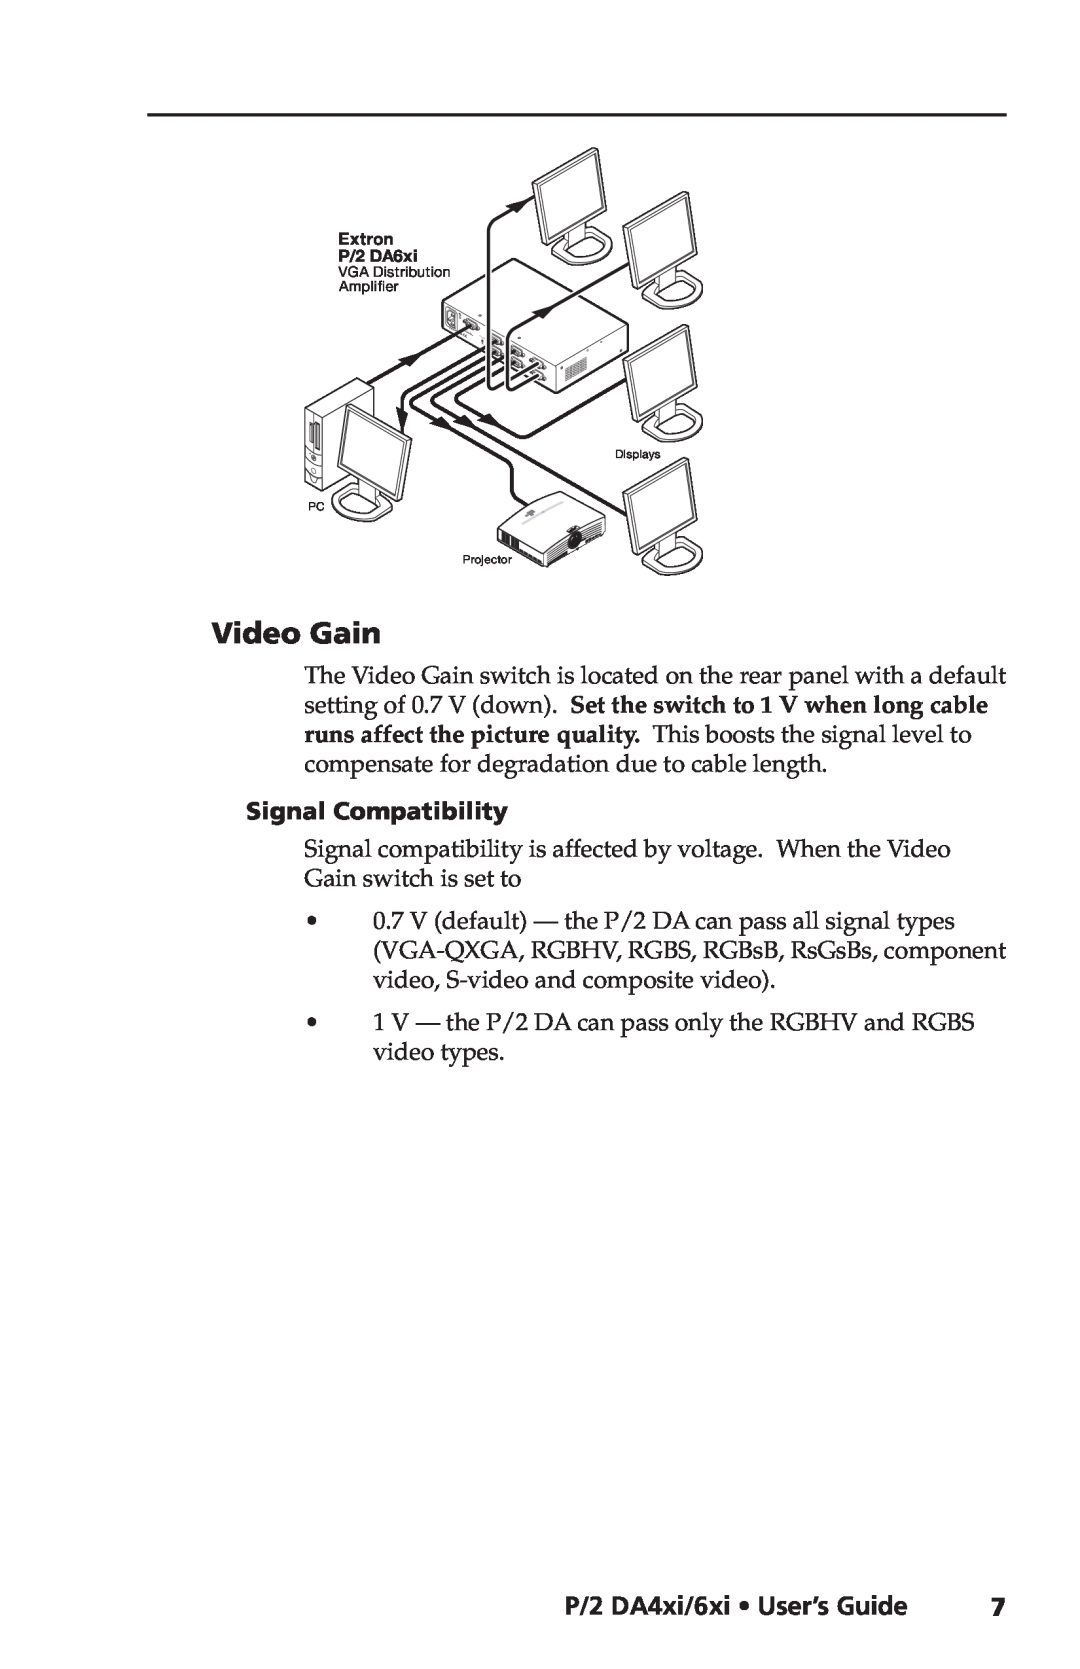 Extron electronic P/2 DA6XI, P/2 DA4XI manual Video Gain, P/2 DA4xi/6xi User’s Guide, Signal Compatibility 